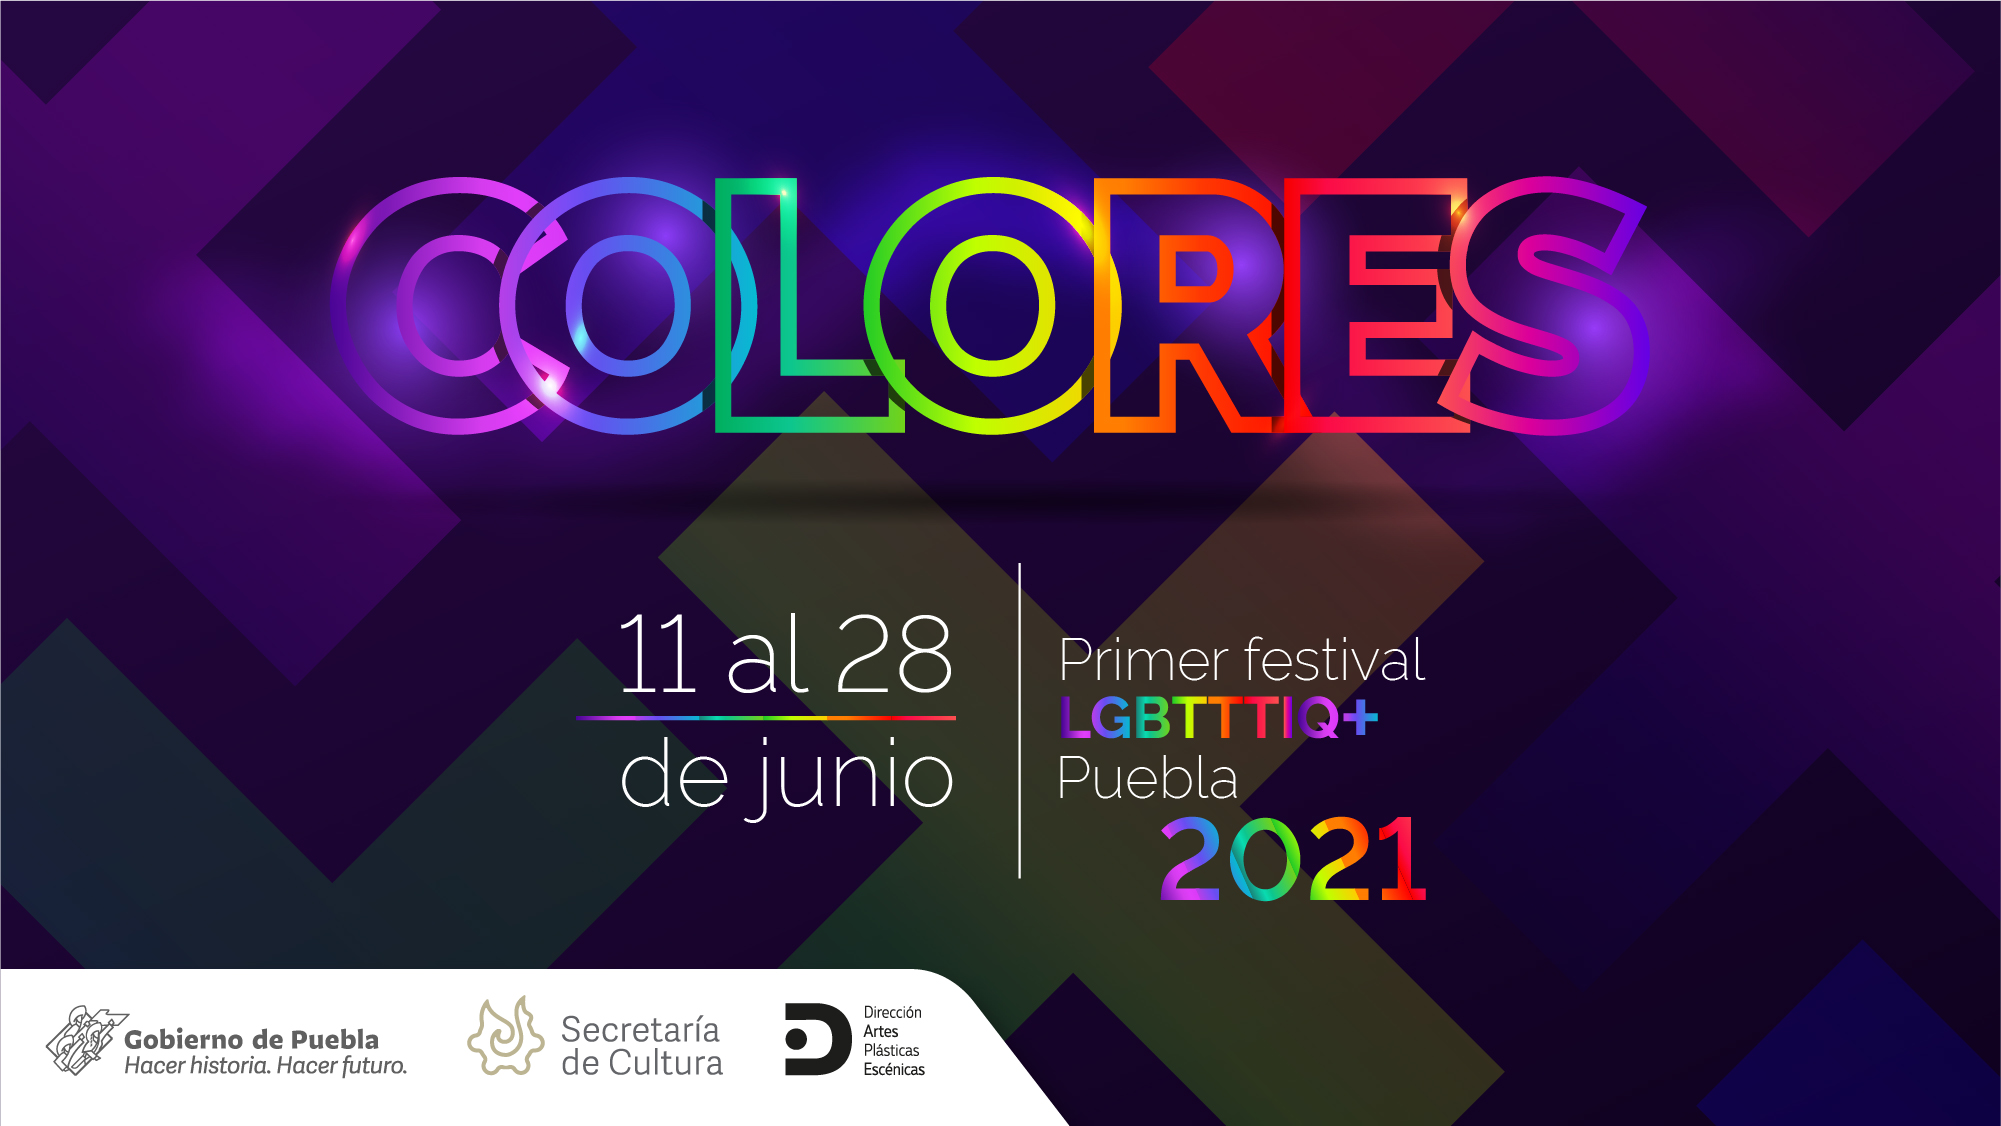 Colores: 1er Festival LGBTTTIQ+ en Puebla, organiza Secretaría de Cultura